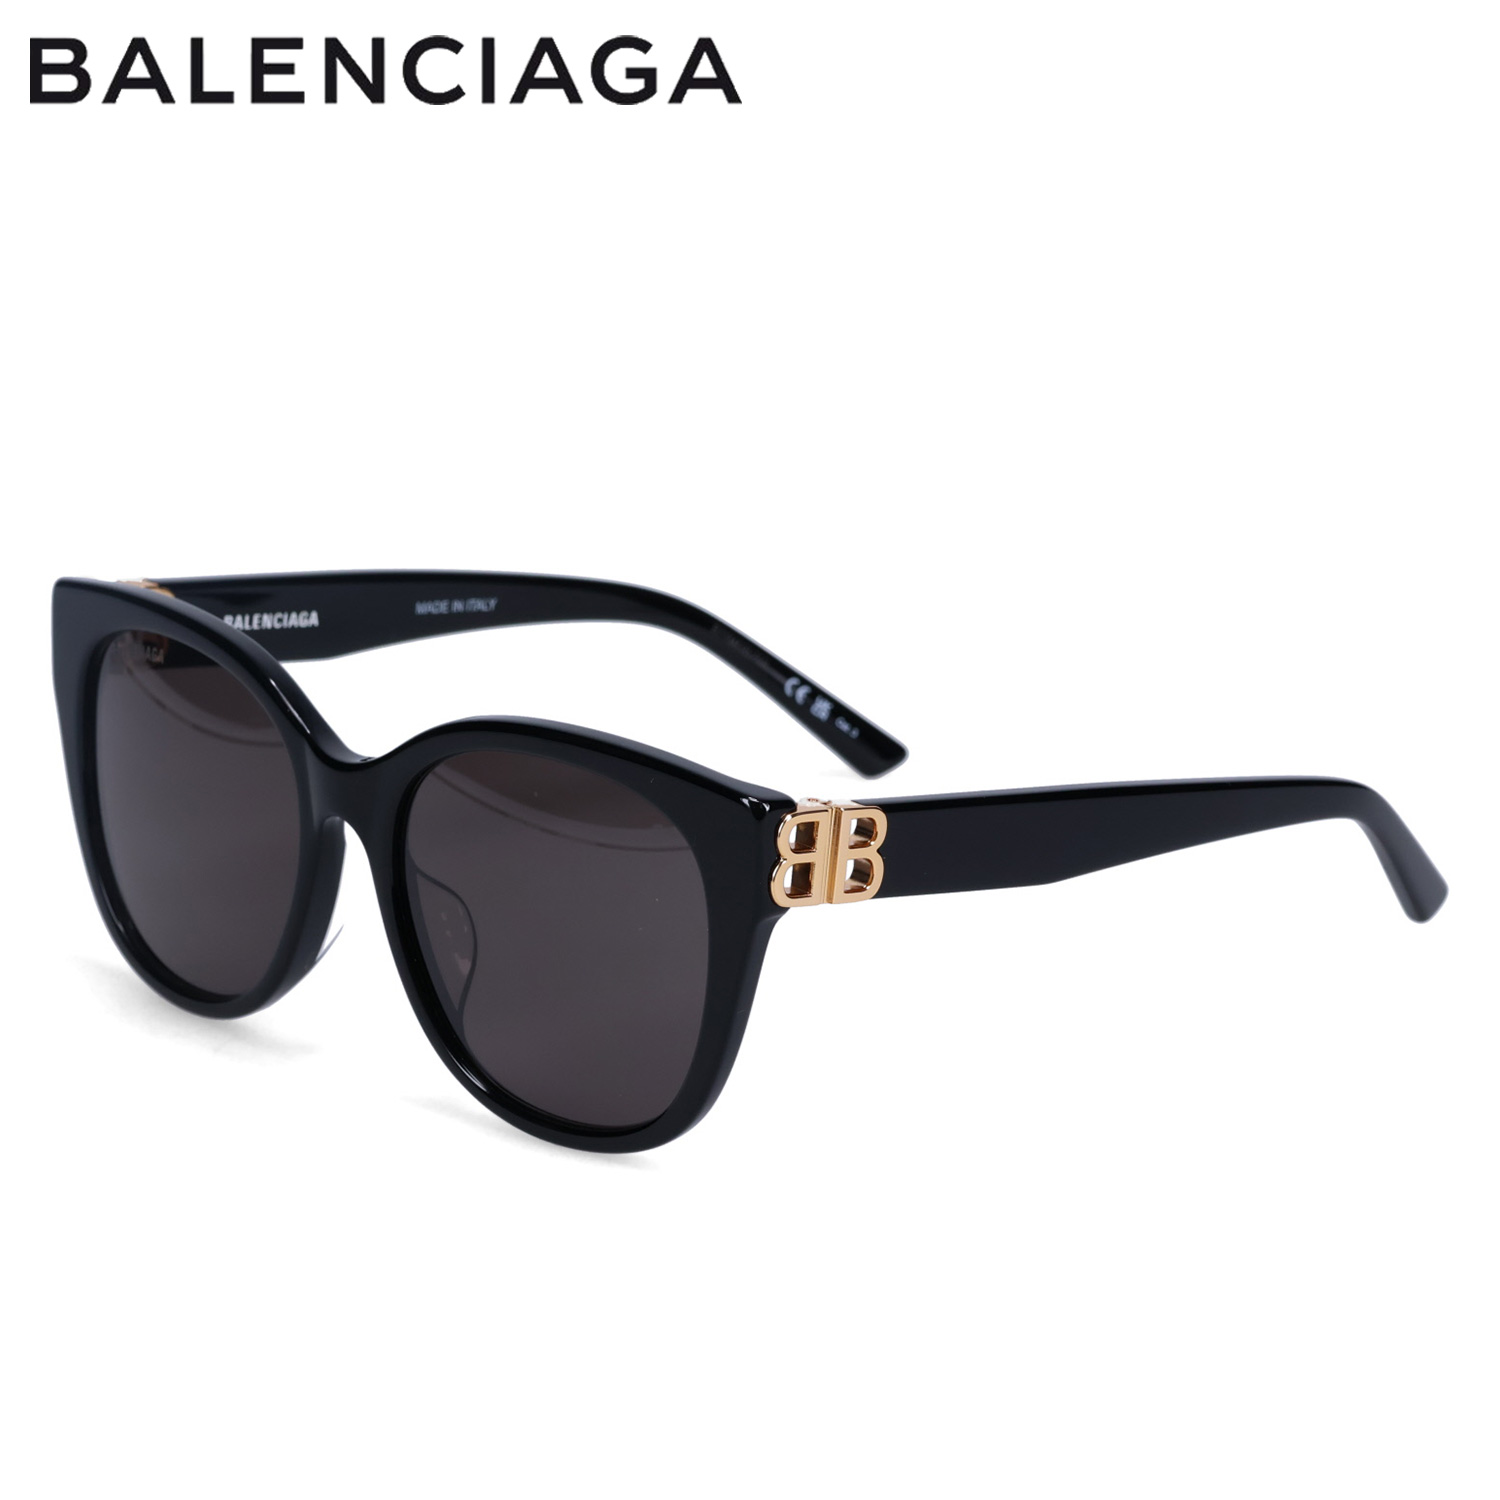 BALENCIAGA バレンシアガ サングラス メンズ レディース アジアンフィット SUNGLASSES ブラック 黒 BB0103SA-001